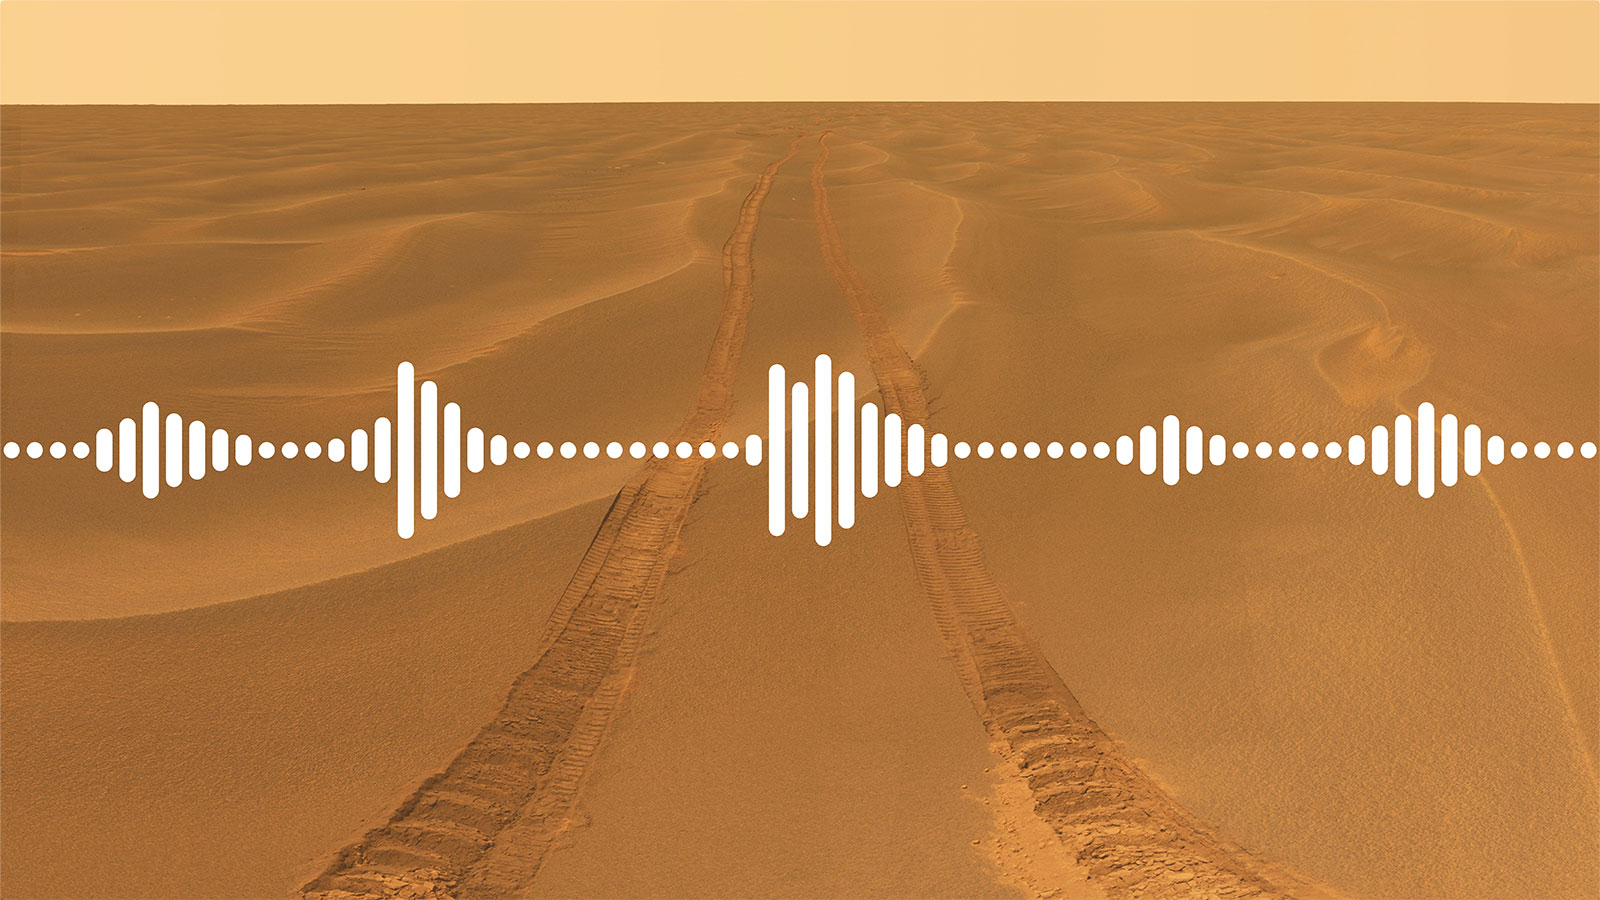 Así cambia el sonido en Marte.